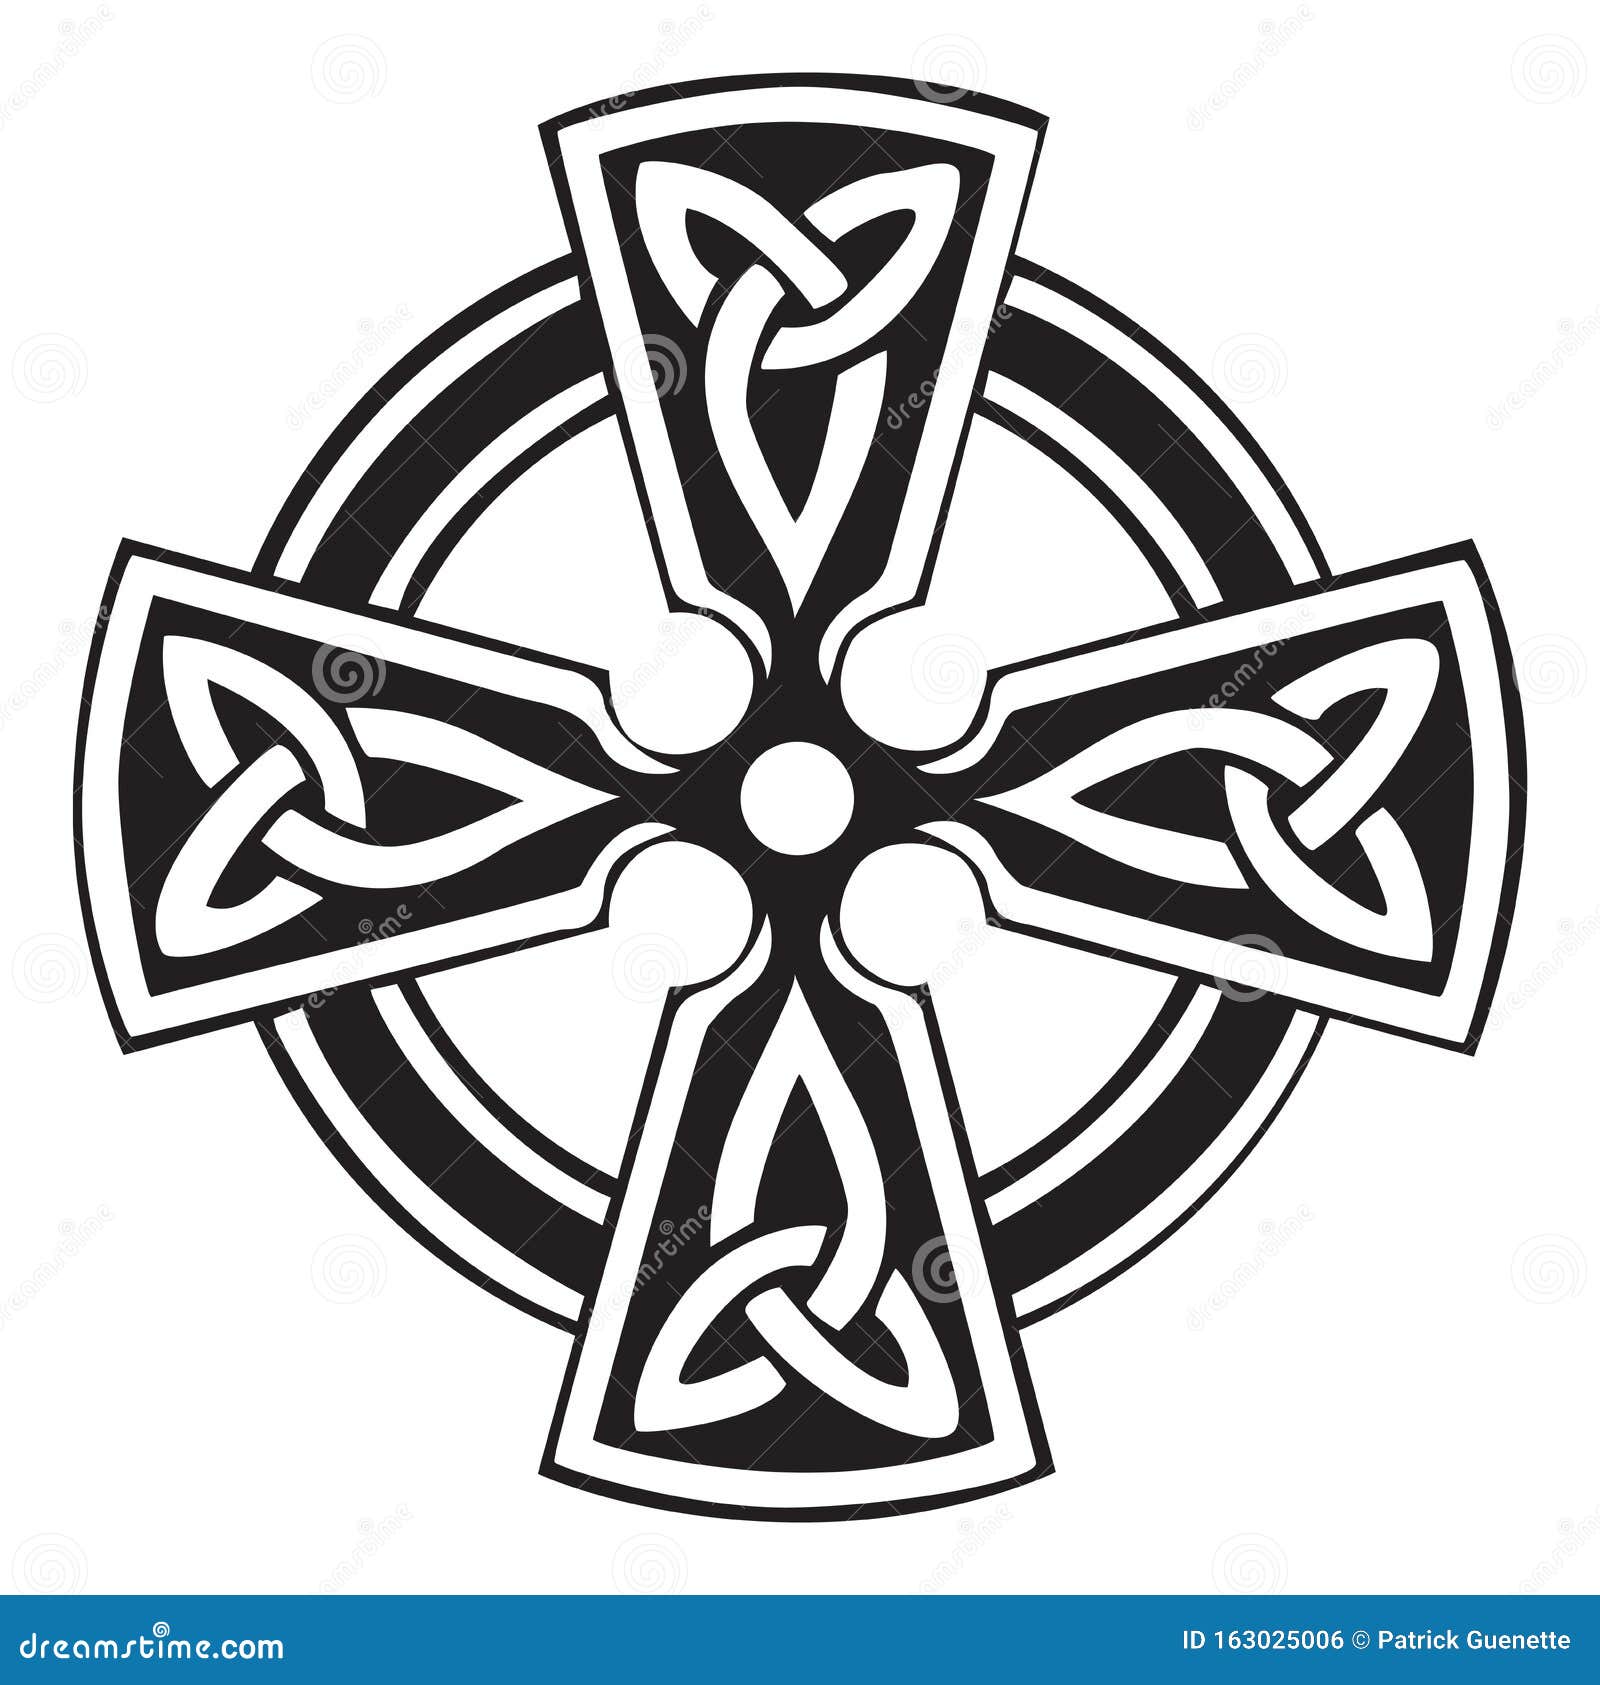 Detalles más de 76 cruz celta dibujo muy caliente - camera.edu.vn